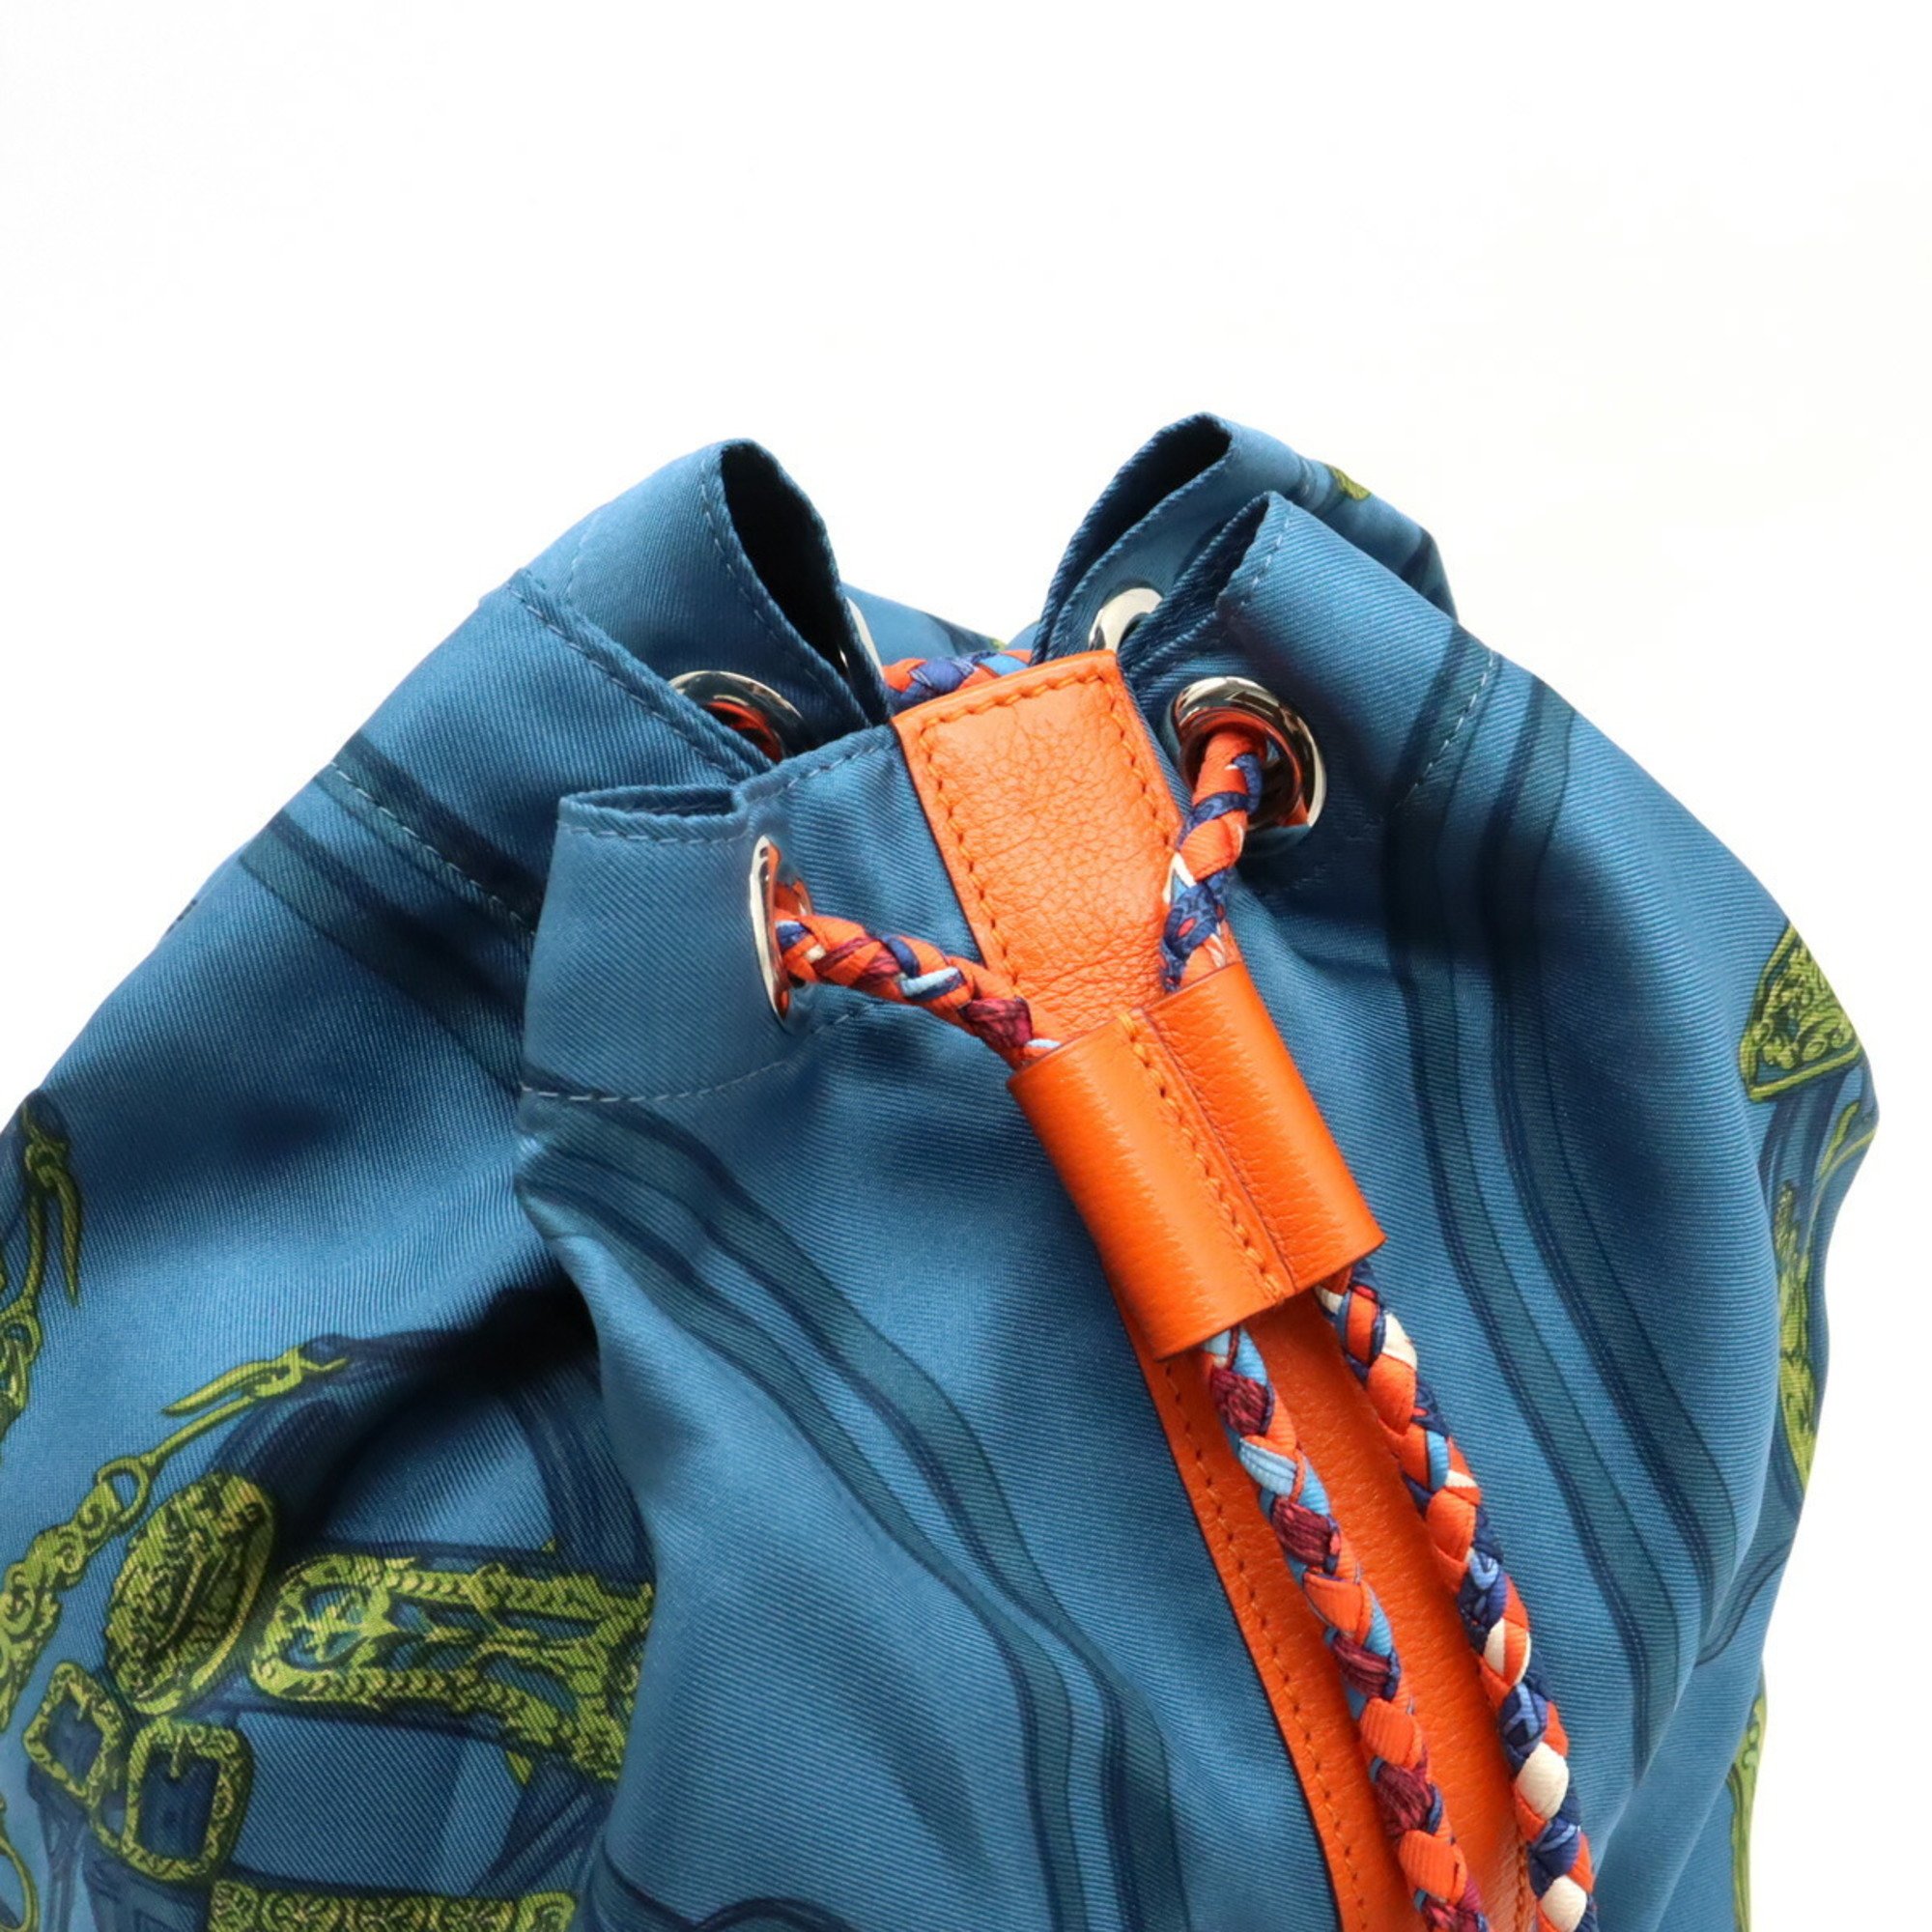 HERMES Soircool 22 BRIDES de GALA Shoulder bag Backpack Silk Leather Blue Orange □Q stamp